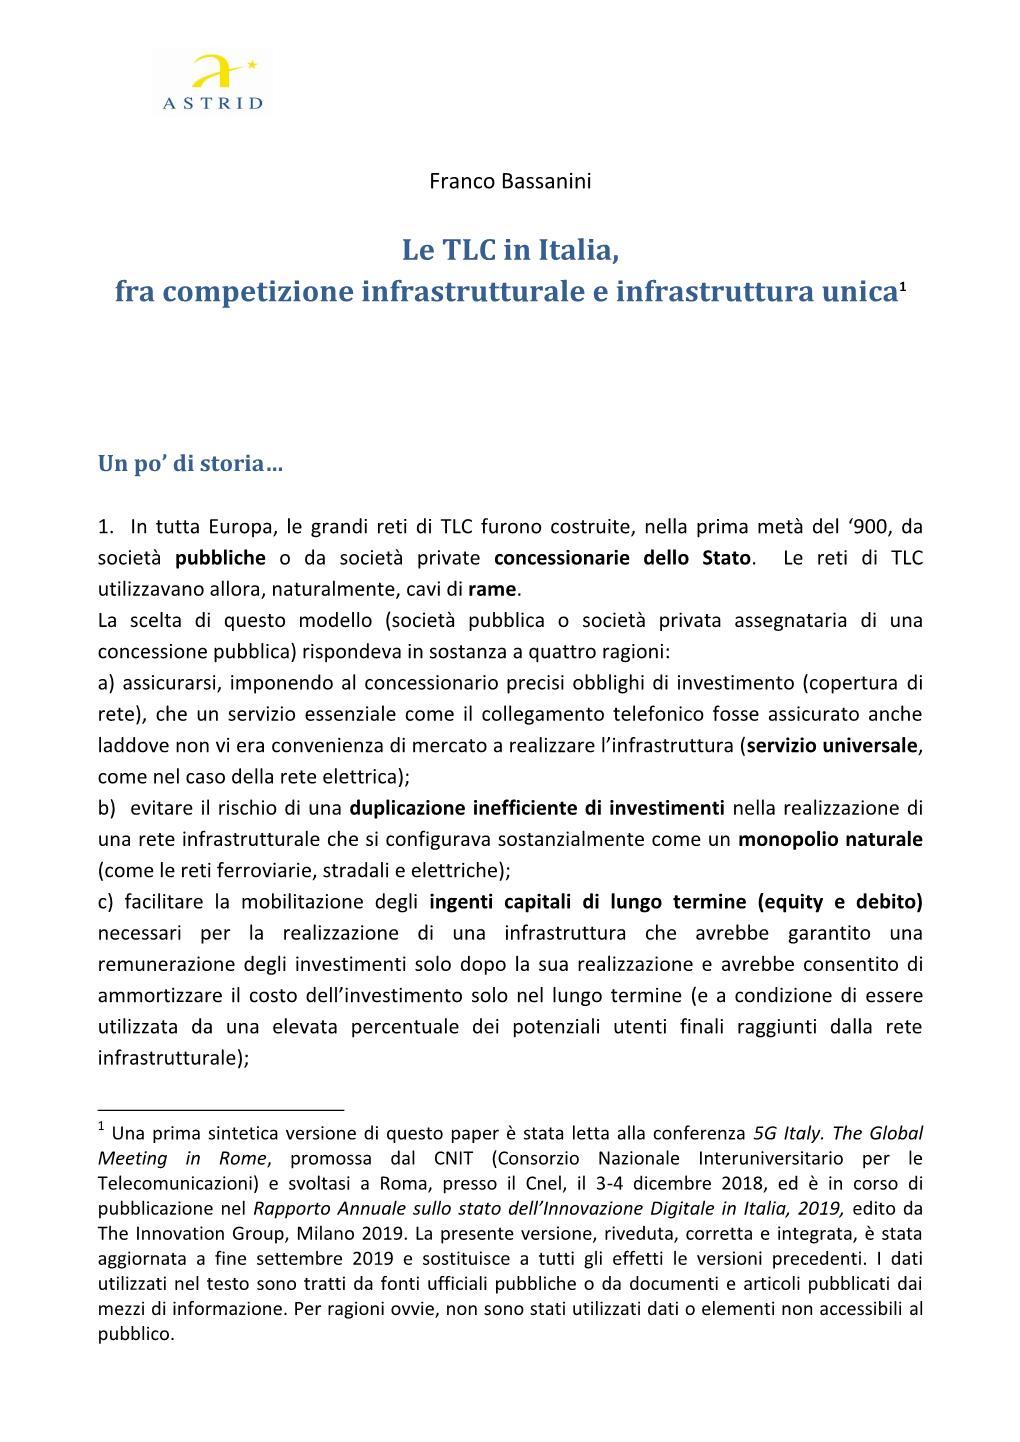 Le TLC in Italia, Fra Competizione Infrastrutturale E Infrastruttura Unica1